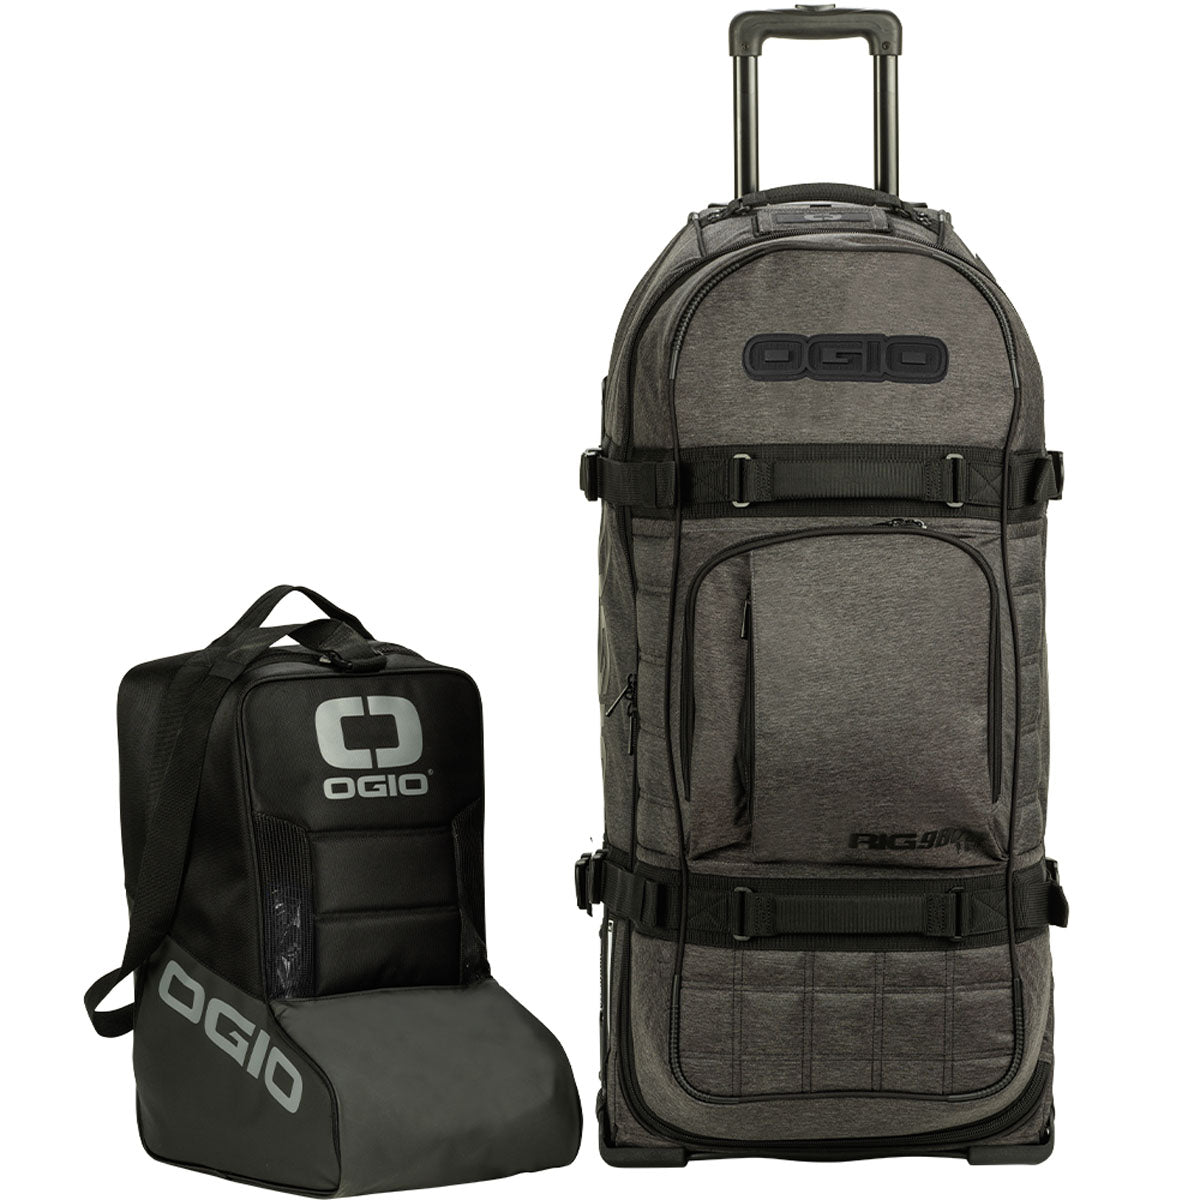 Ogio Rig 9800 Pro Gear Bag - Dark Static - ExtremeSupply.com